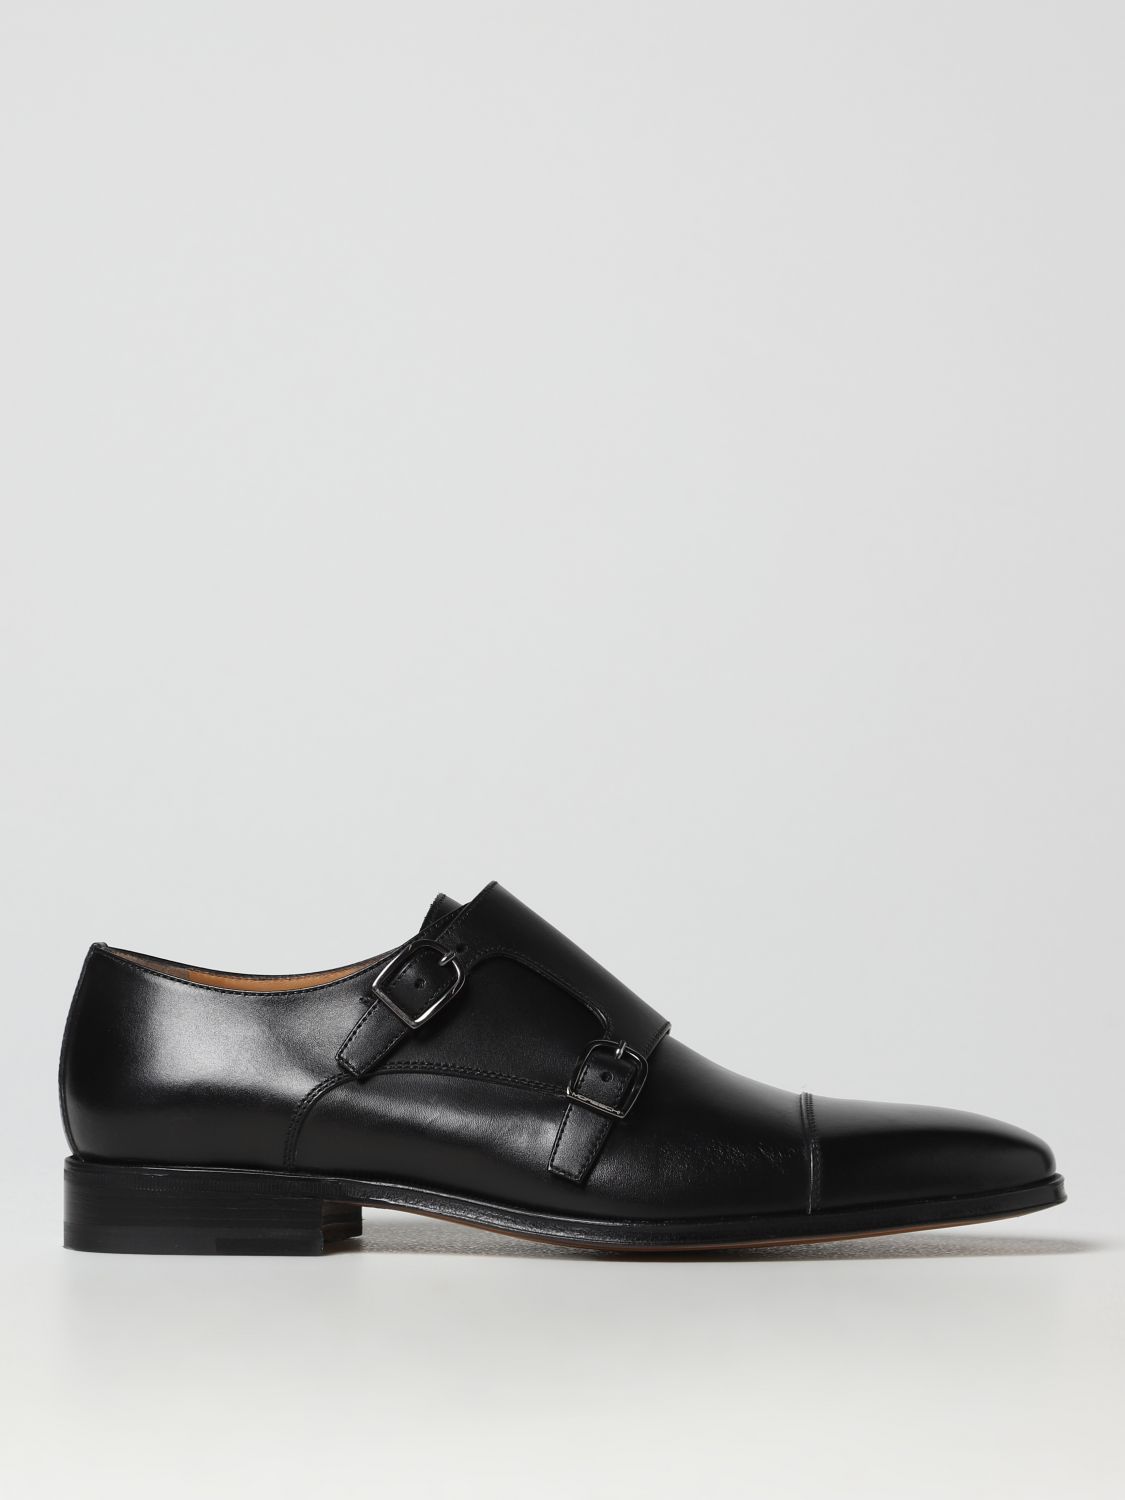 Moreschi Man Loafers Black Size 12.5 Calfskin